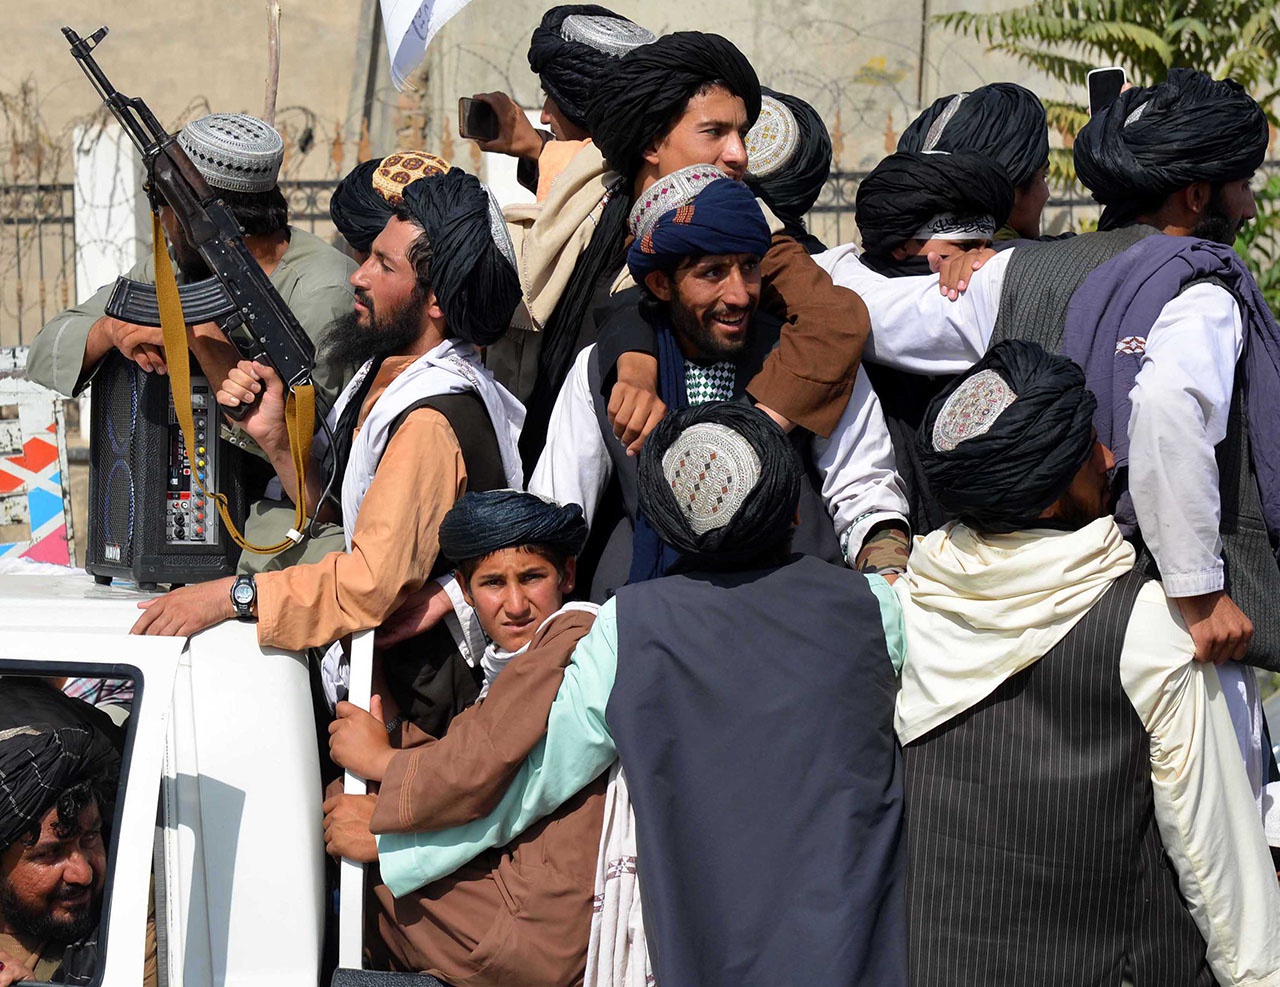 Западная коалиция хочет свалить свой провал 20-летнего присутствия в Афганистане на движение «Талибан».